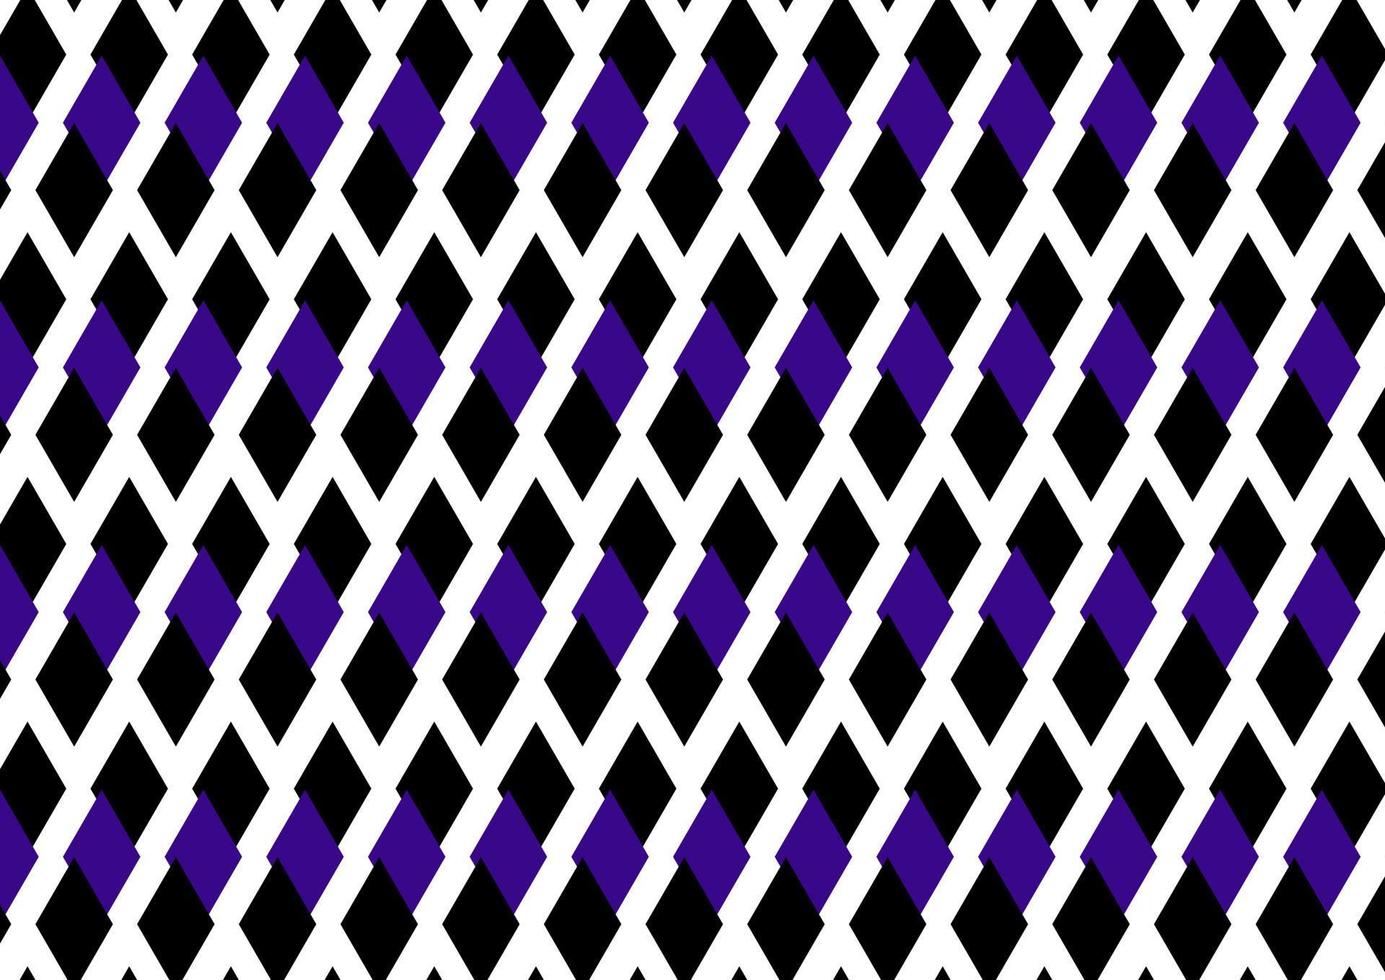 svart och lila rhombus sömlösa geometriska mönster, vektorillustration vektor